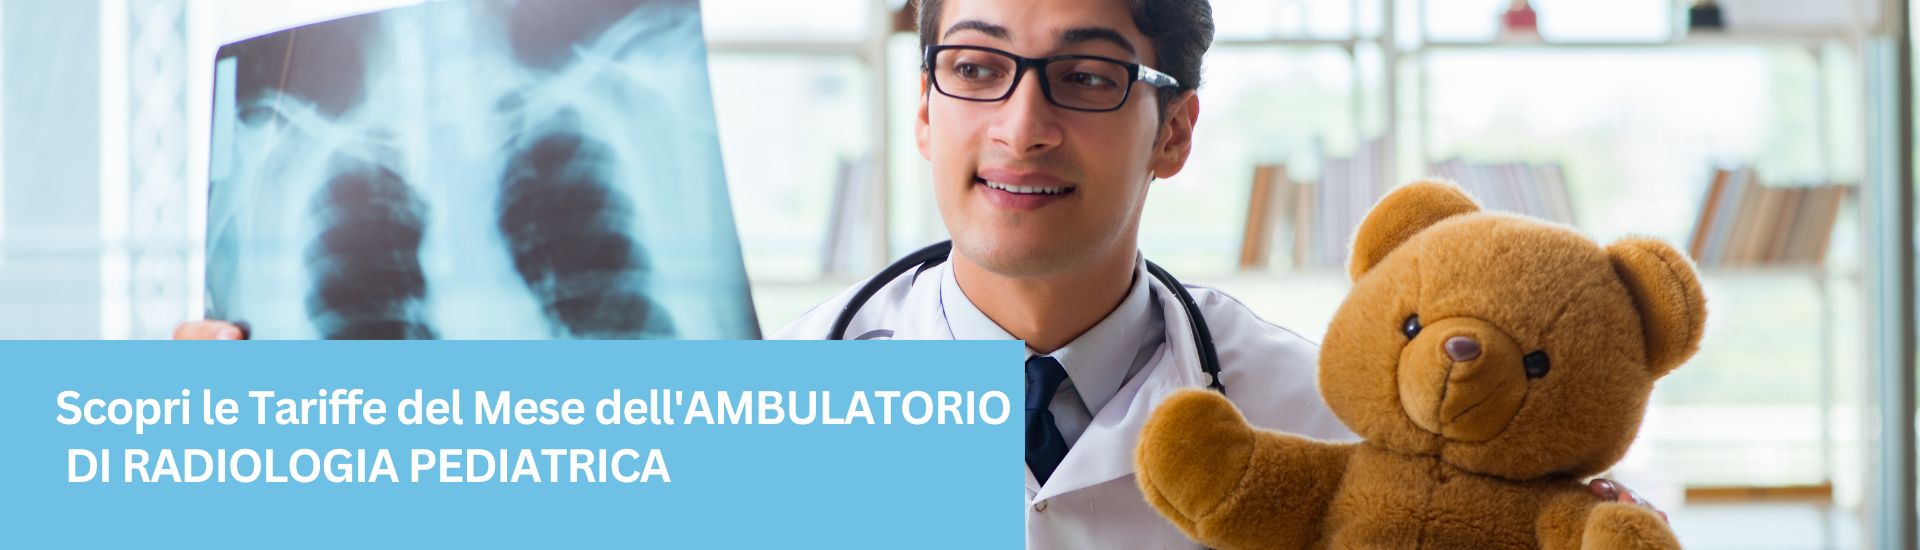 Tariffe del Mese Poliambulatorio Radiologia Pediatrica F-Medical Group Frosinone